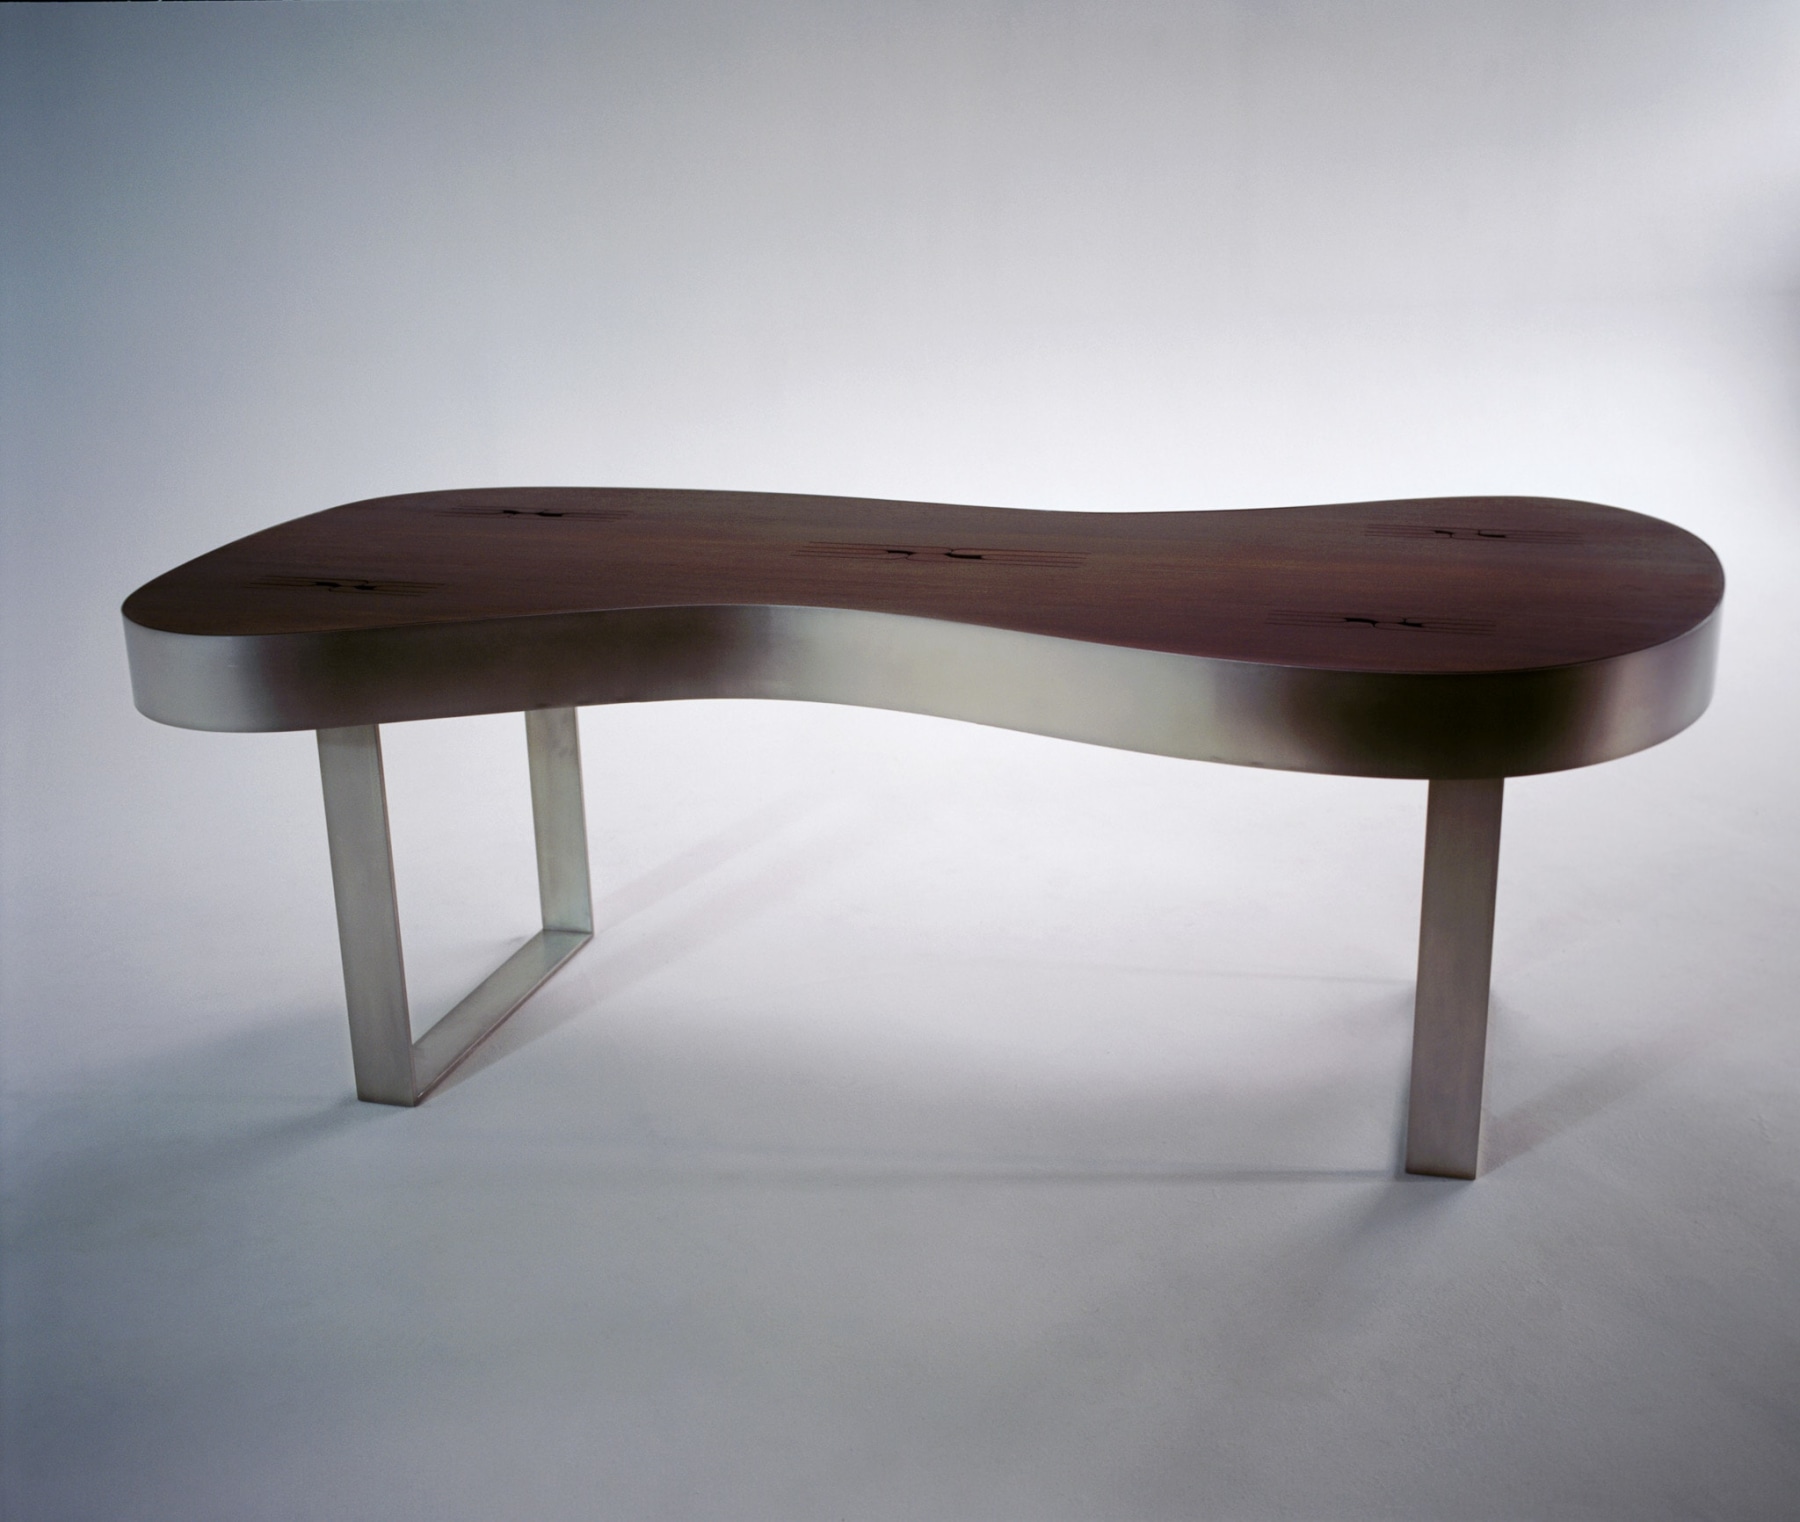 Doug Aitken, K-N-O-C-K-O-U-T (sonic table), 2005